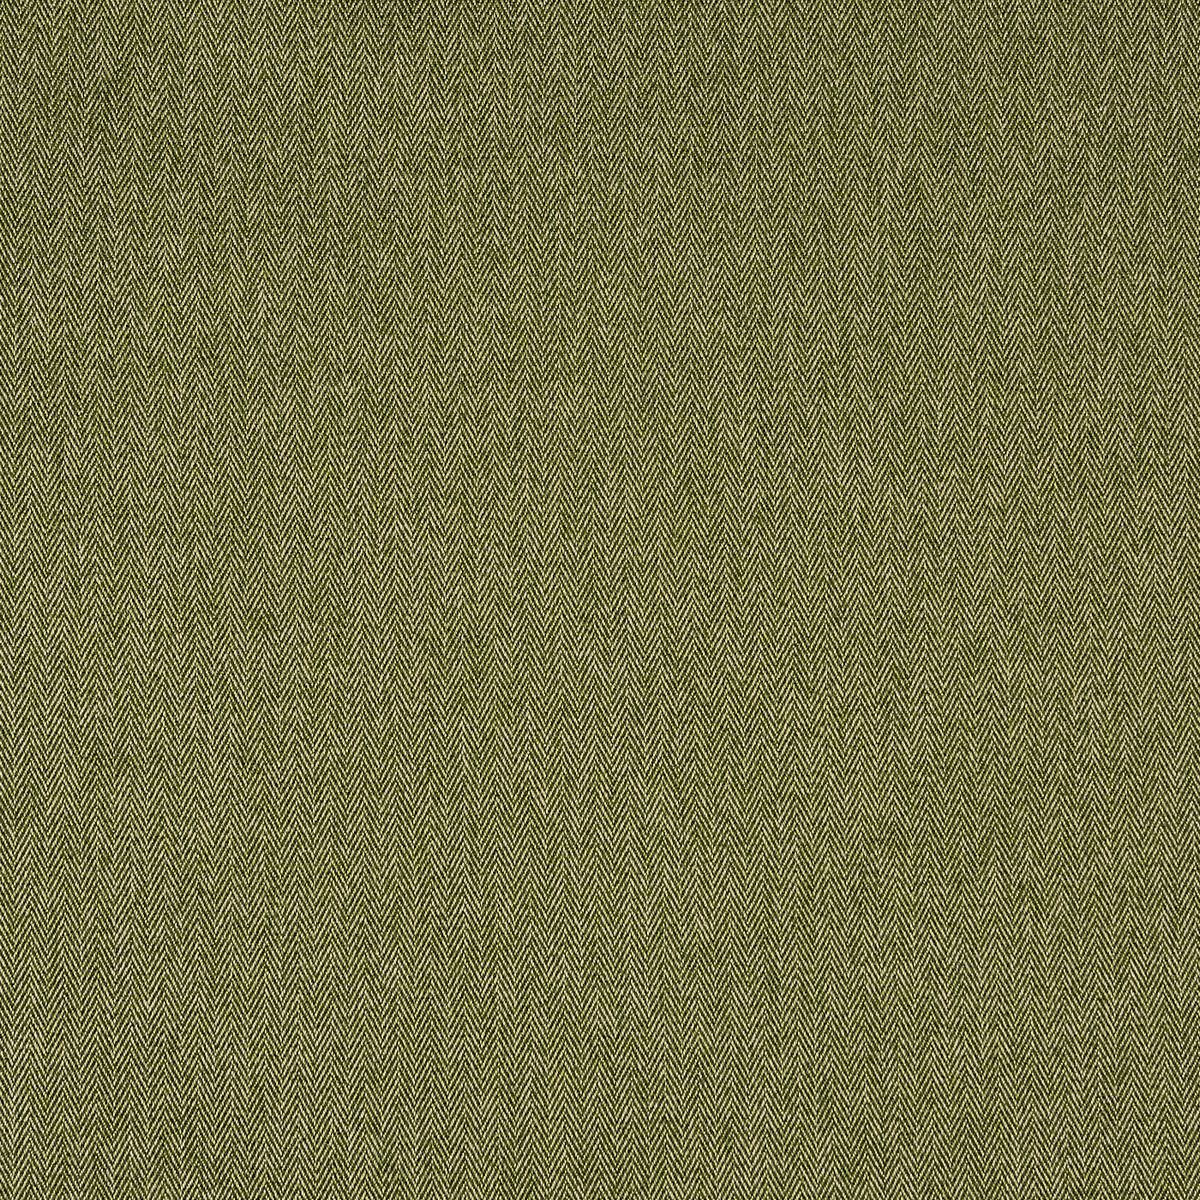 Flynn Forest Fabric by Prestigious Textiles